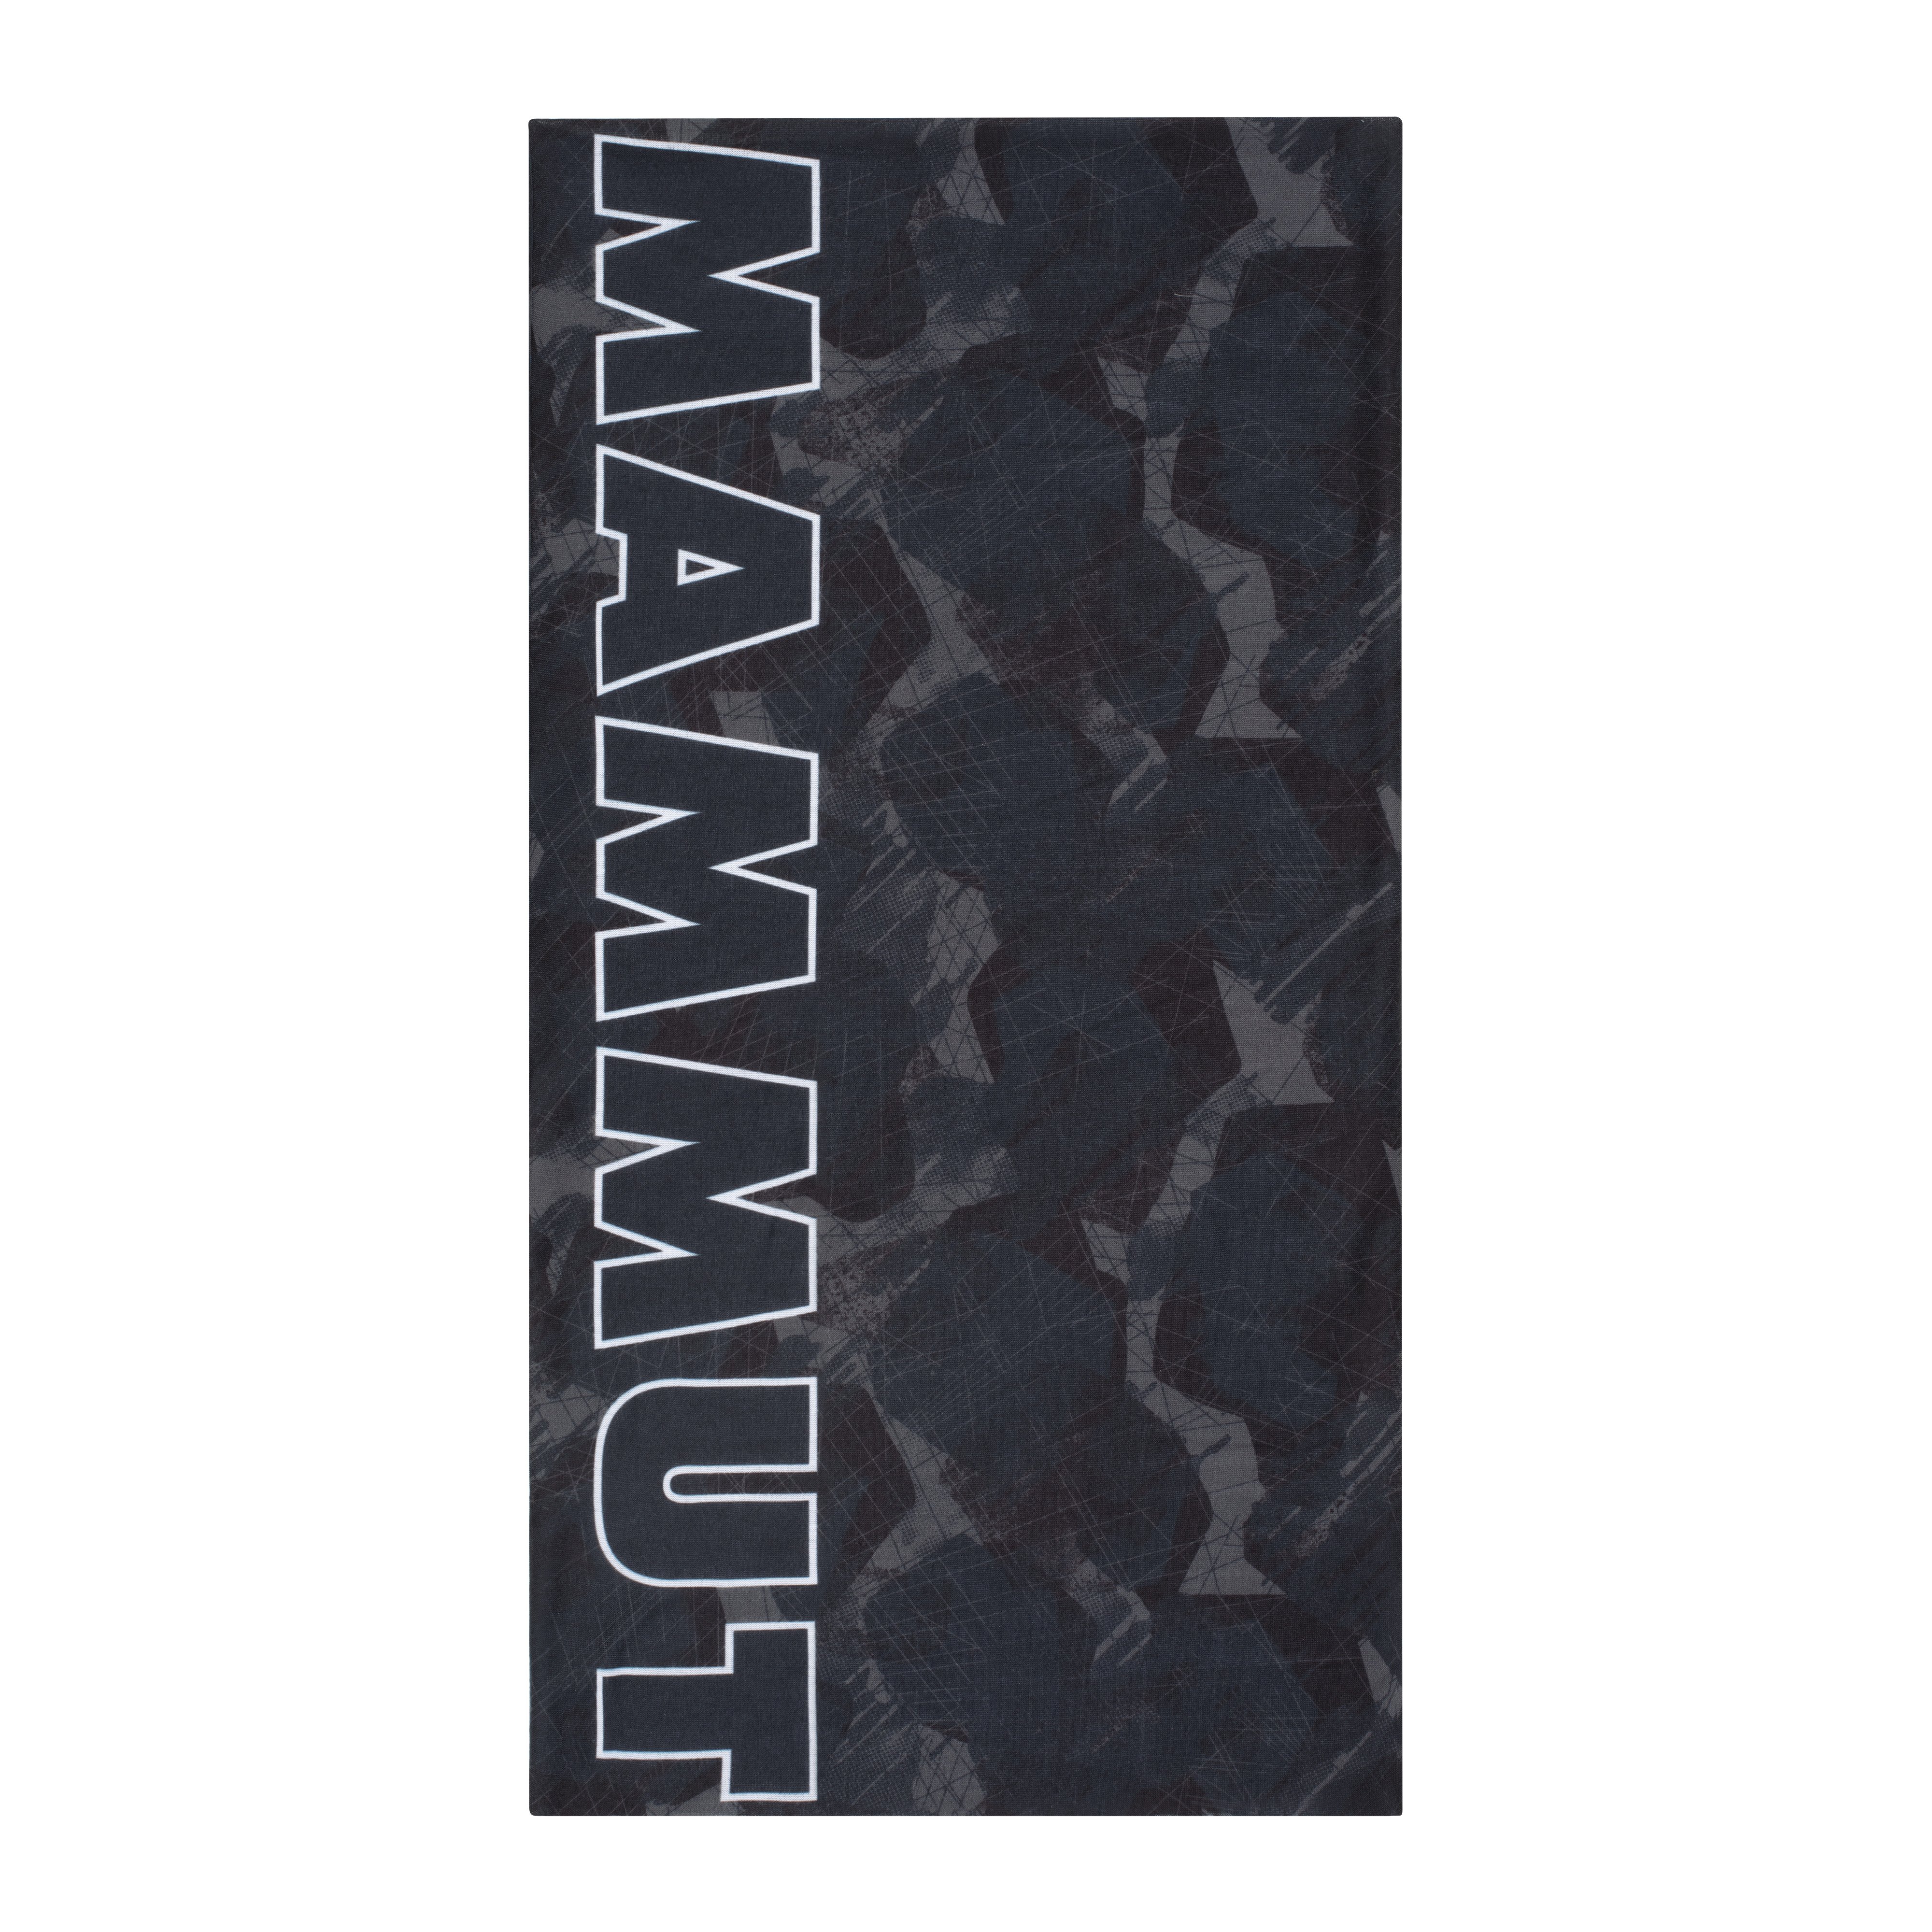 Mammut Neck Gaiter - marine-black camo, one size product image